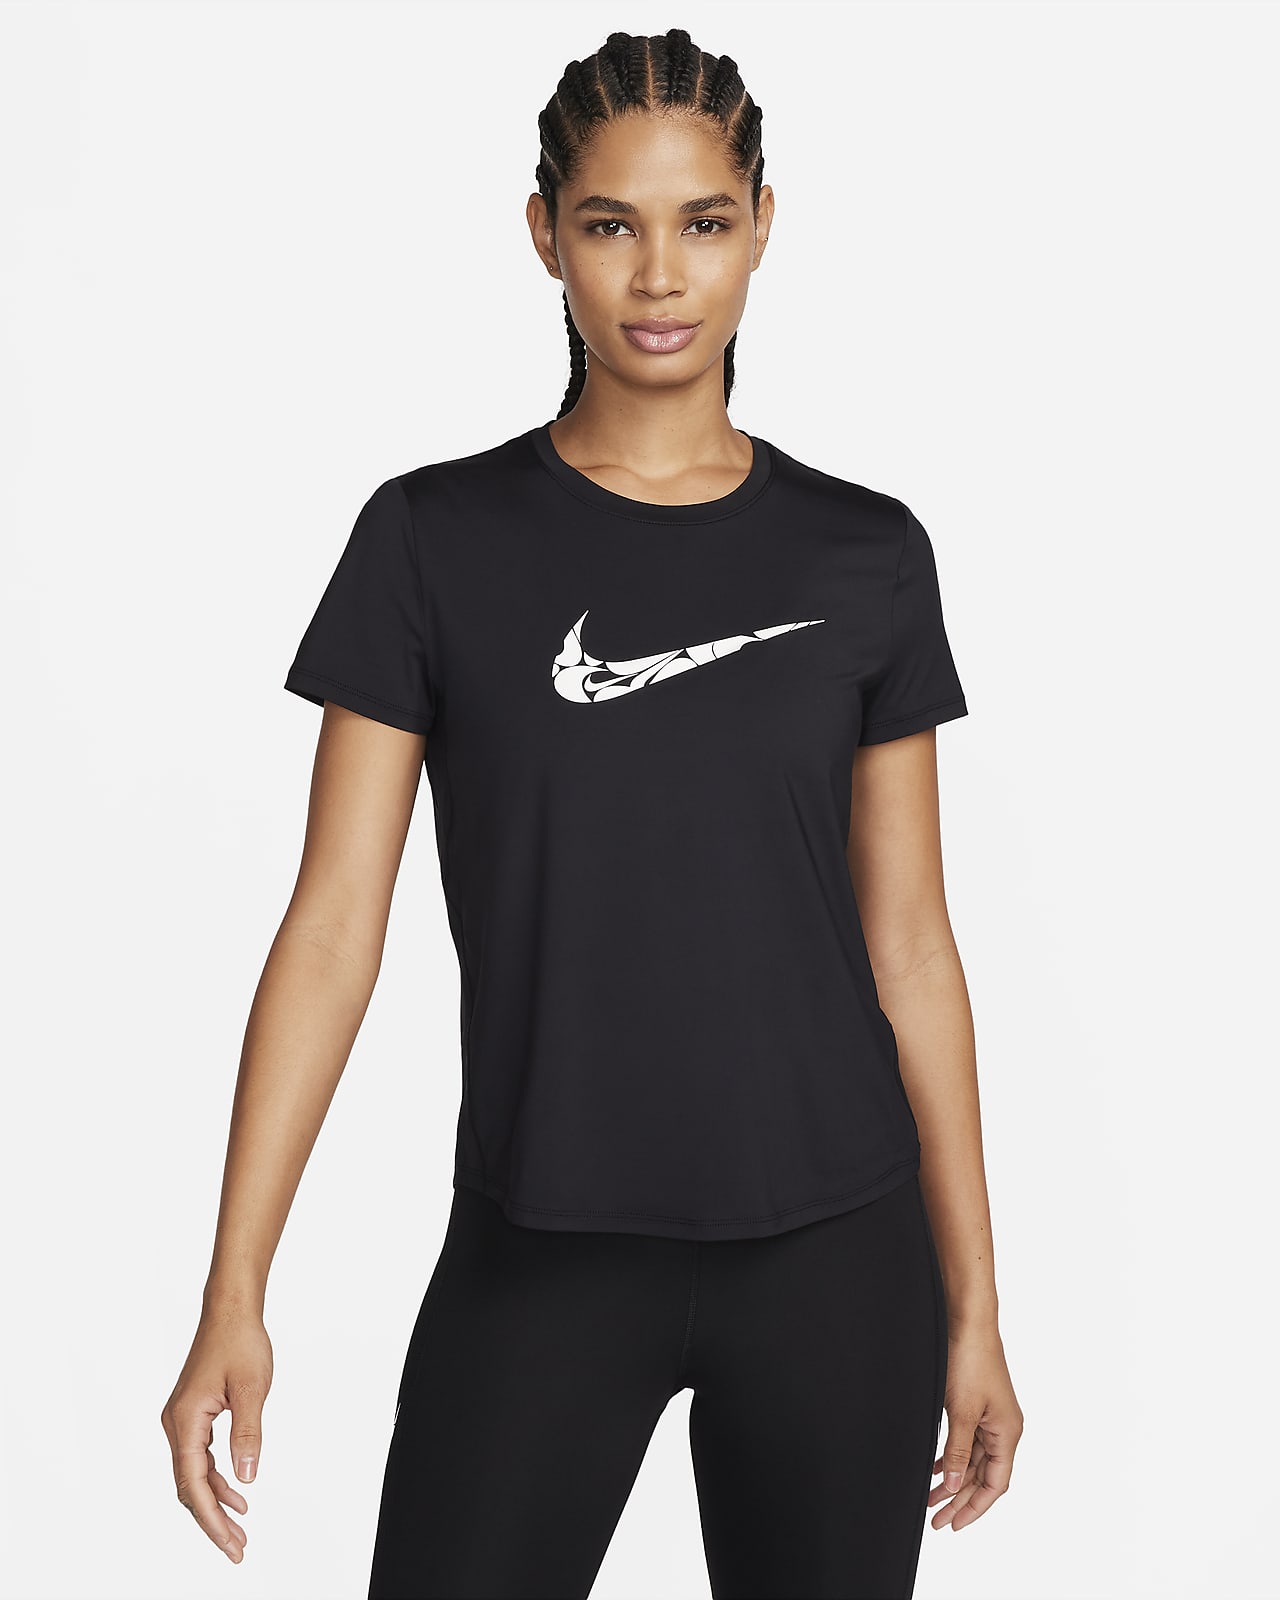 Pantalon survêtement Femme Nike Dri-FIT noir